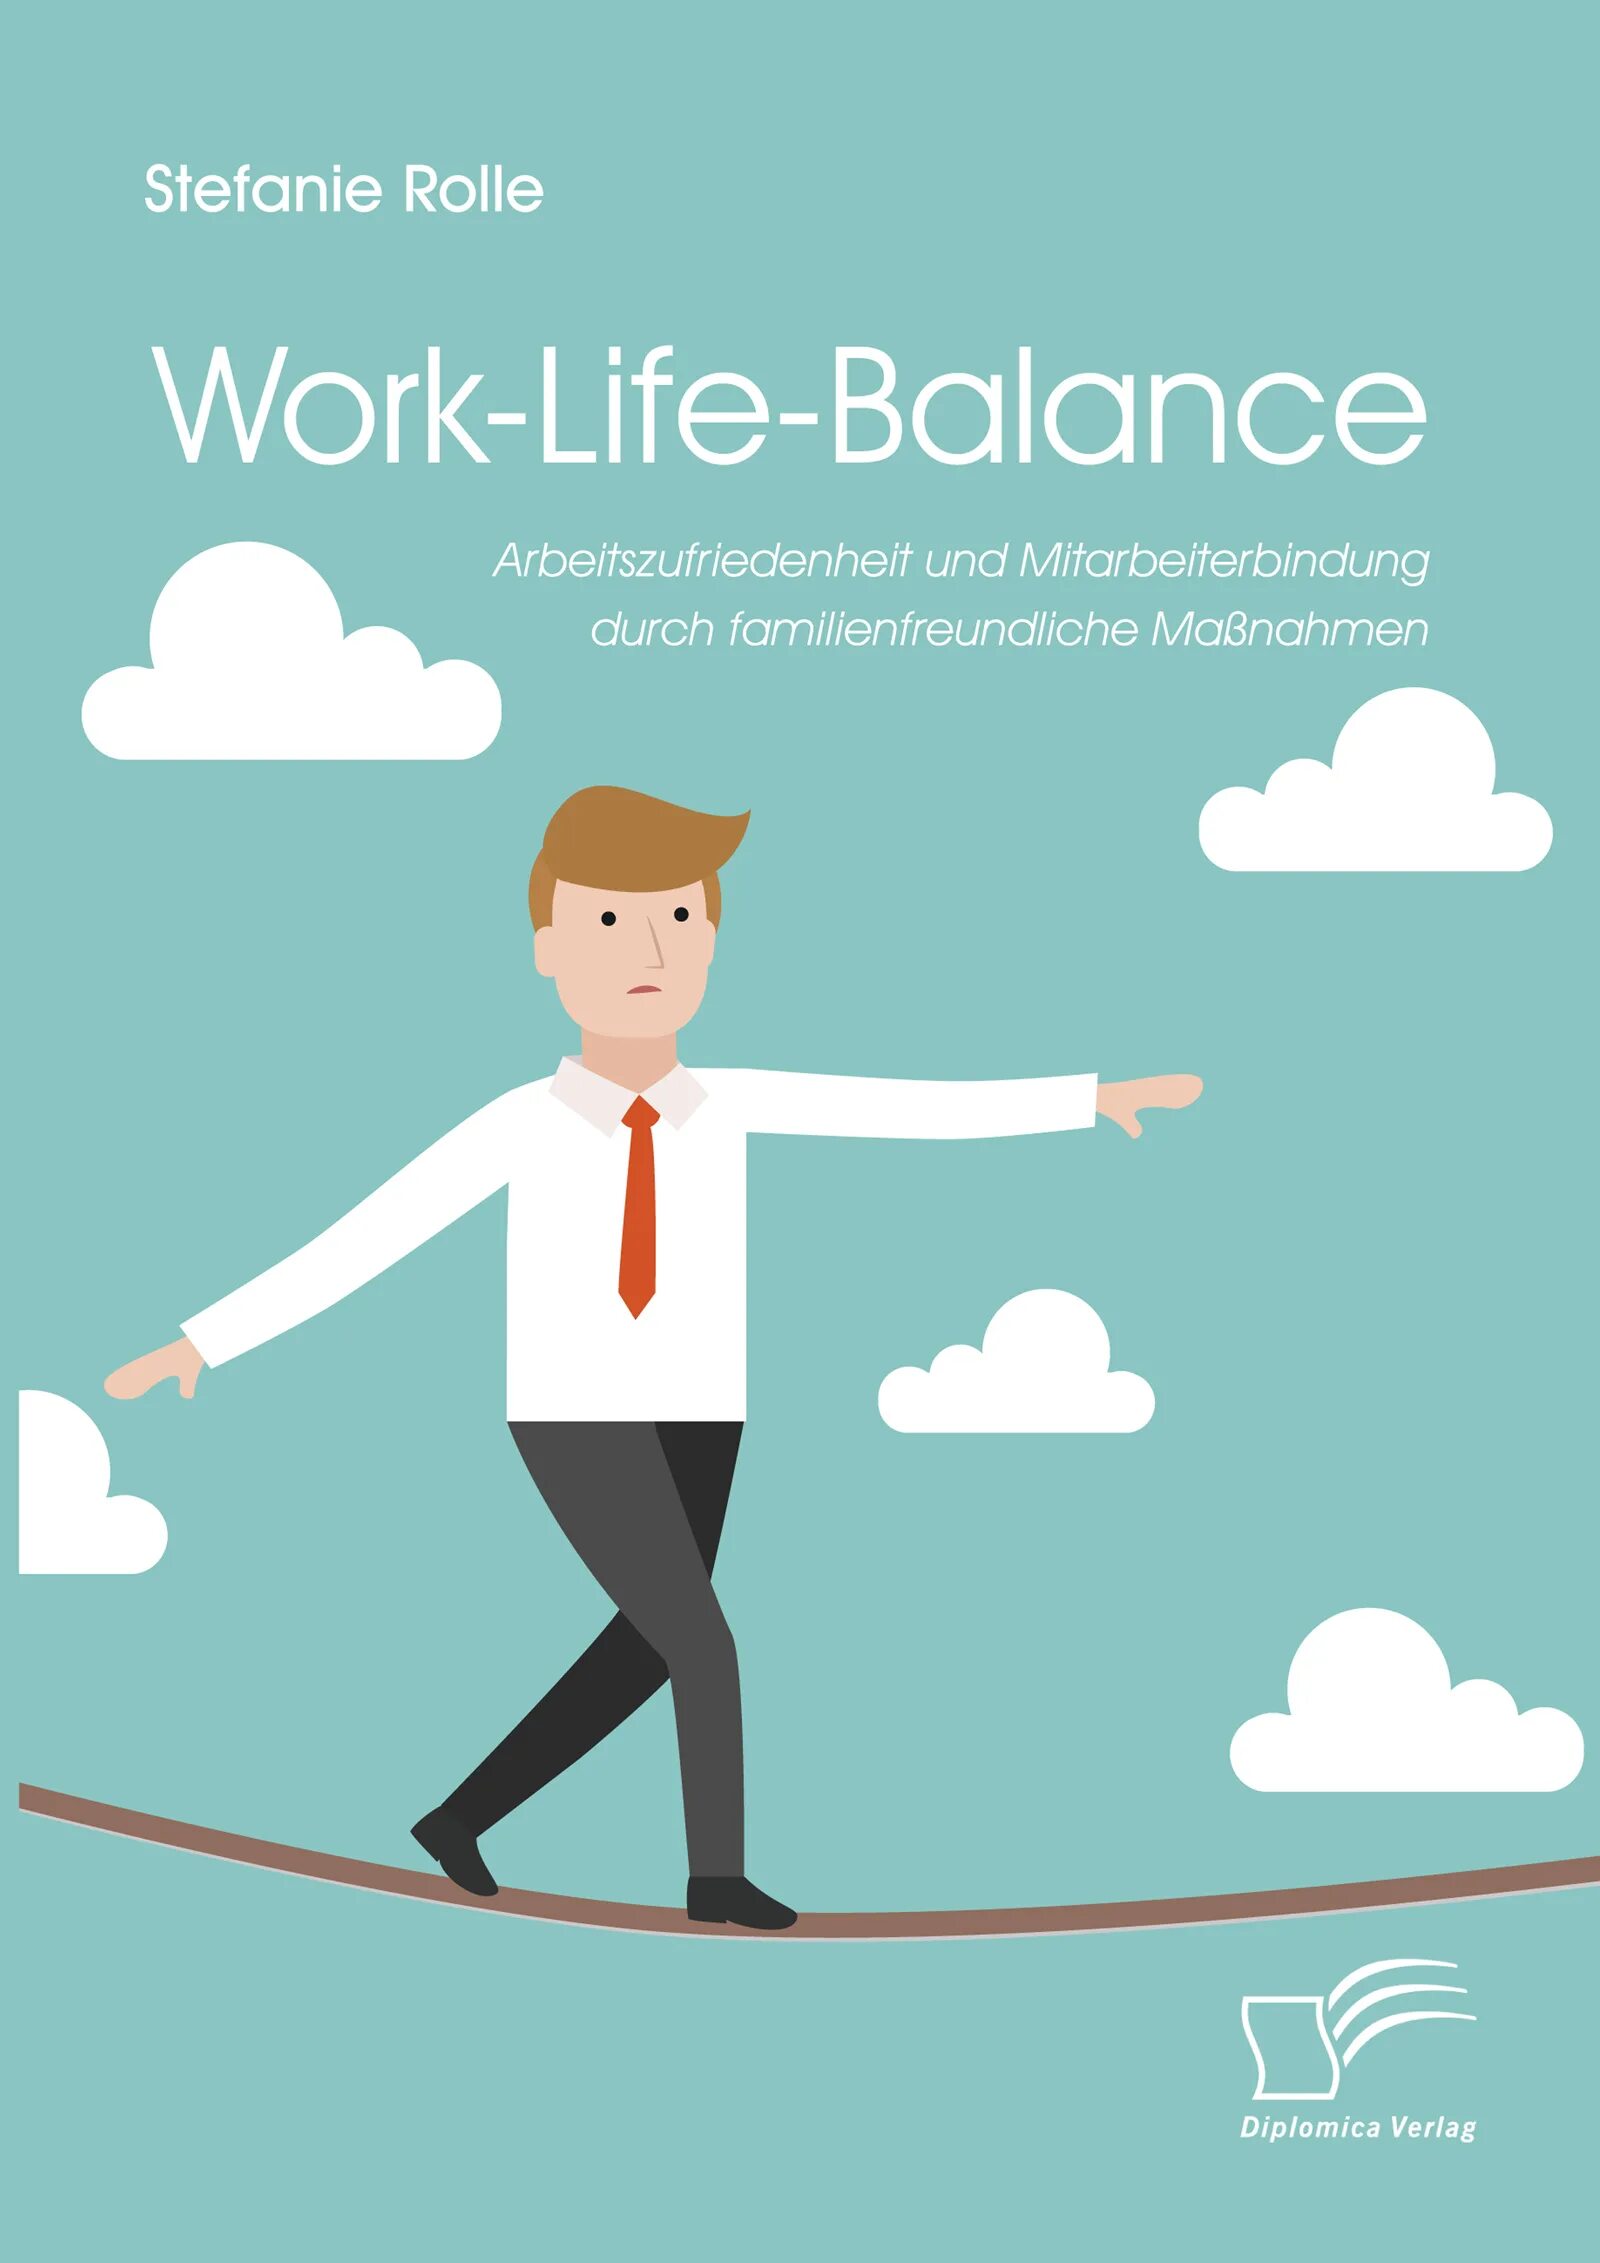 Life is a balance. Work-Life Balance. Work Life баланс что это. Working Life Balance. Ворк лайф Бэлэнс.